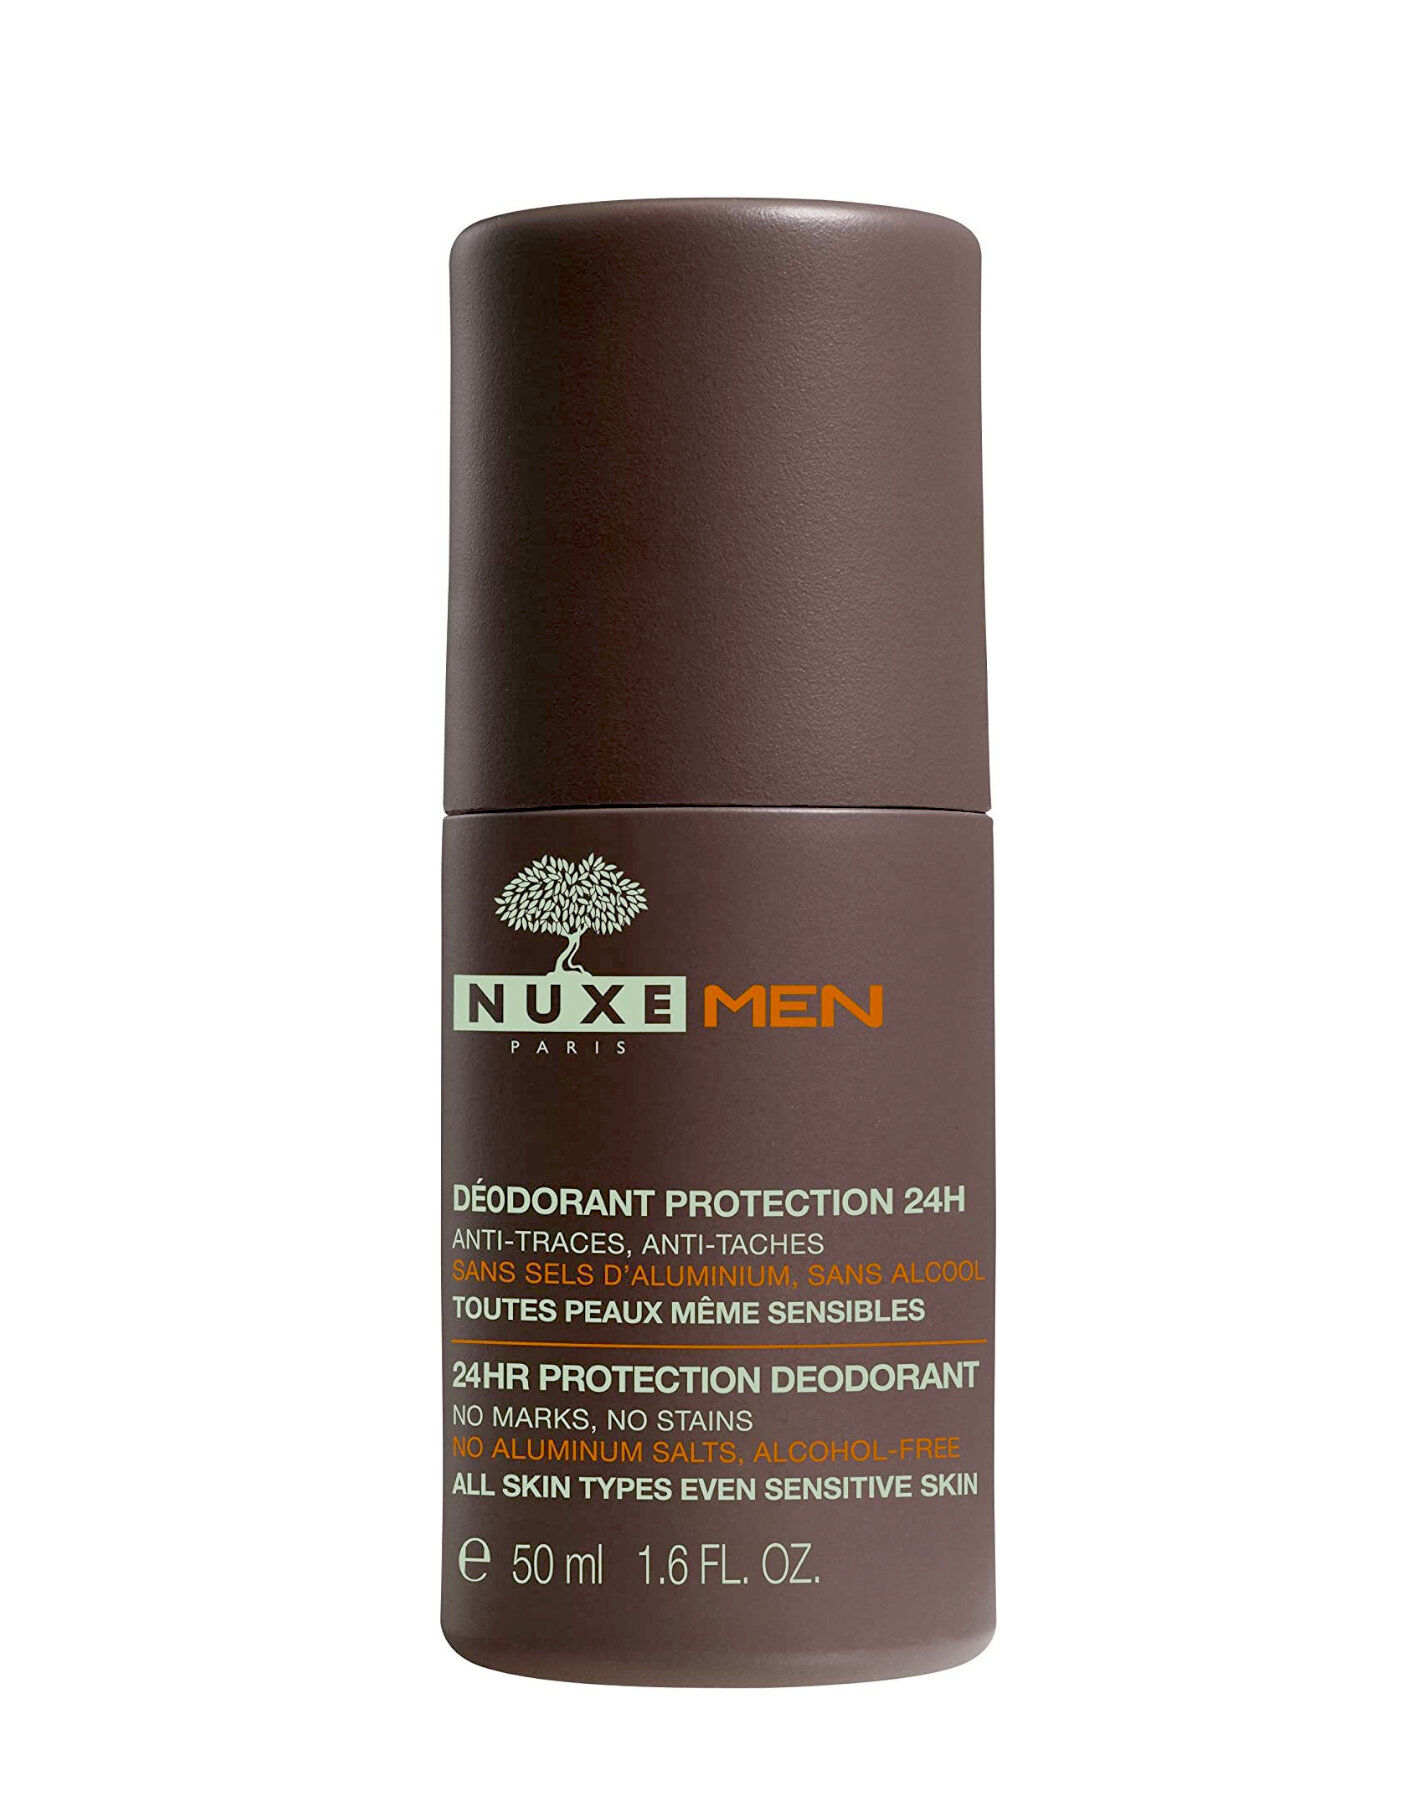 nuxe men - deodorante protezione 24h 50 ml